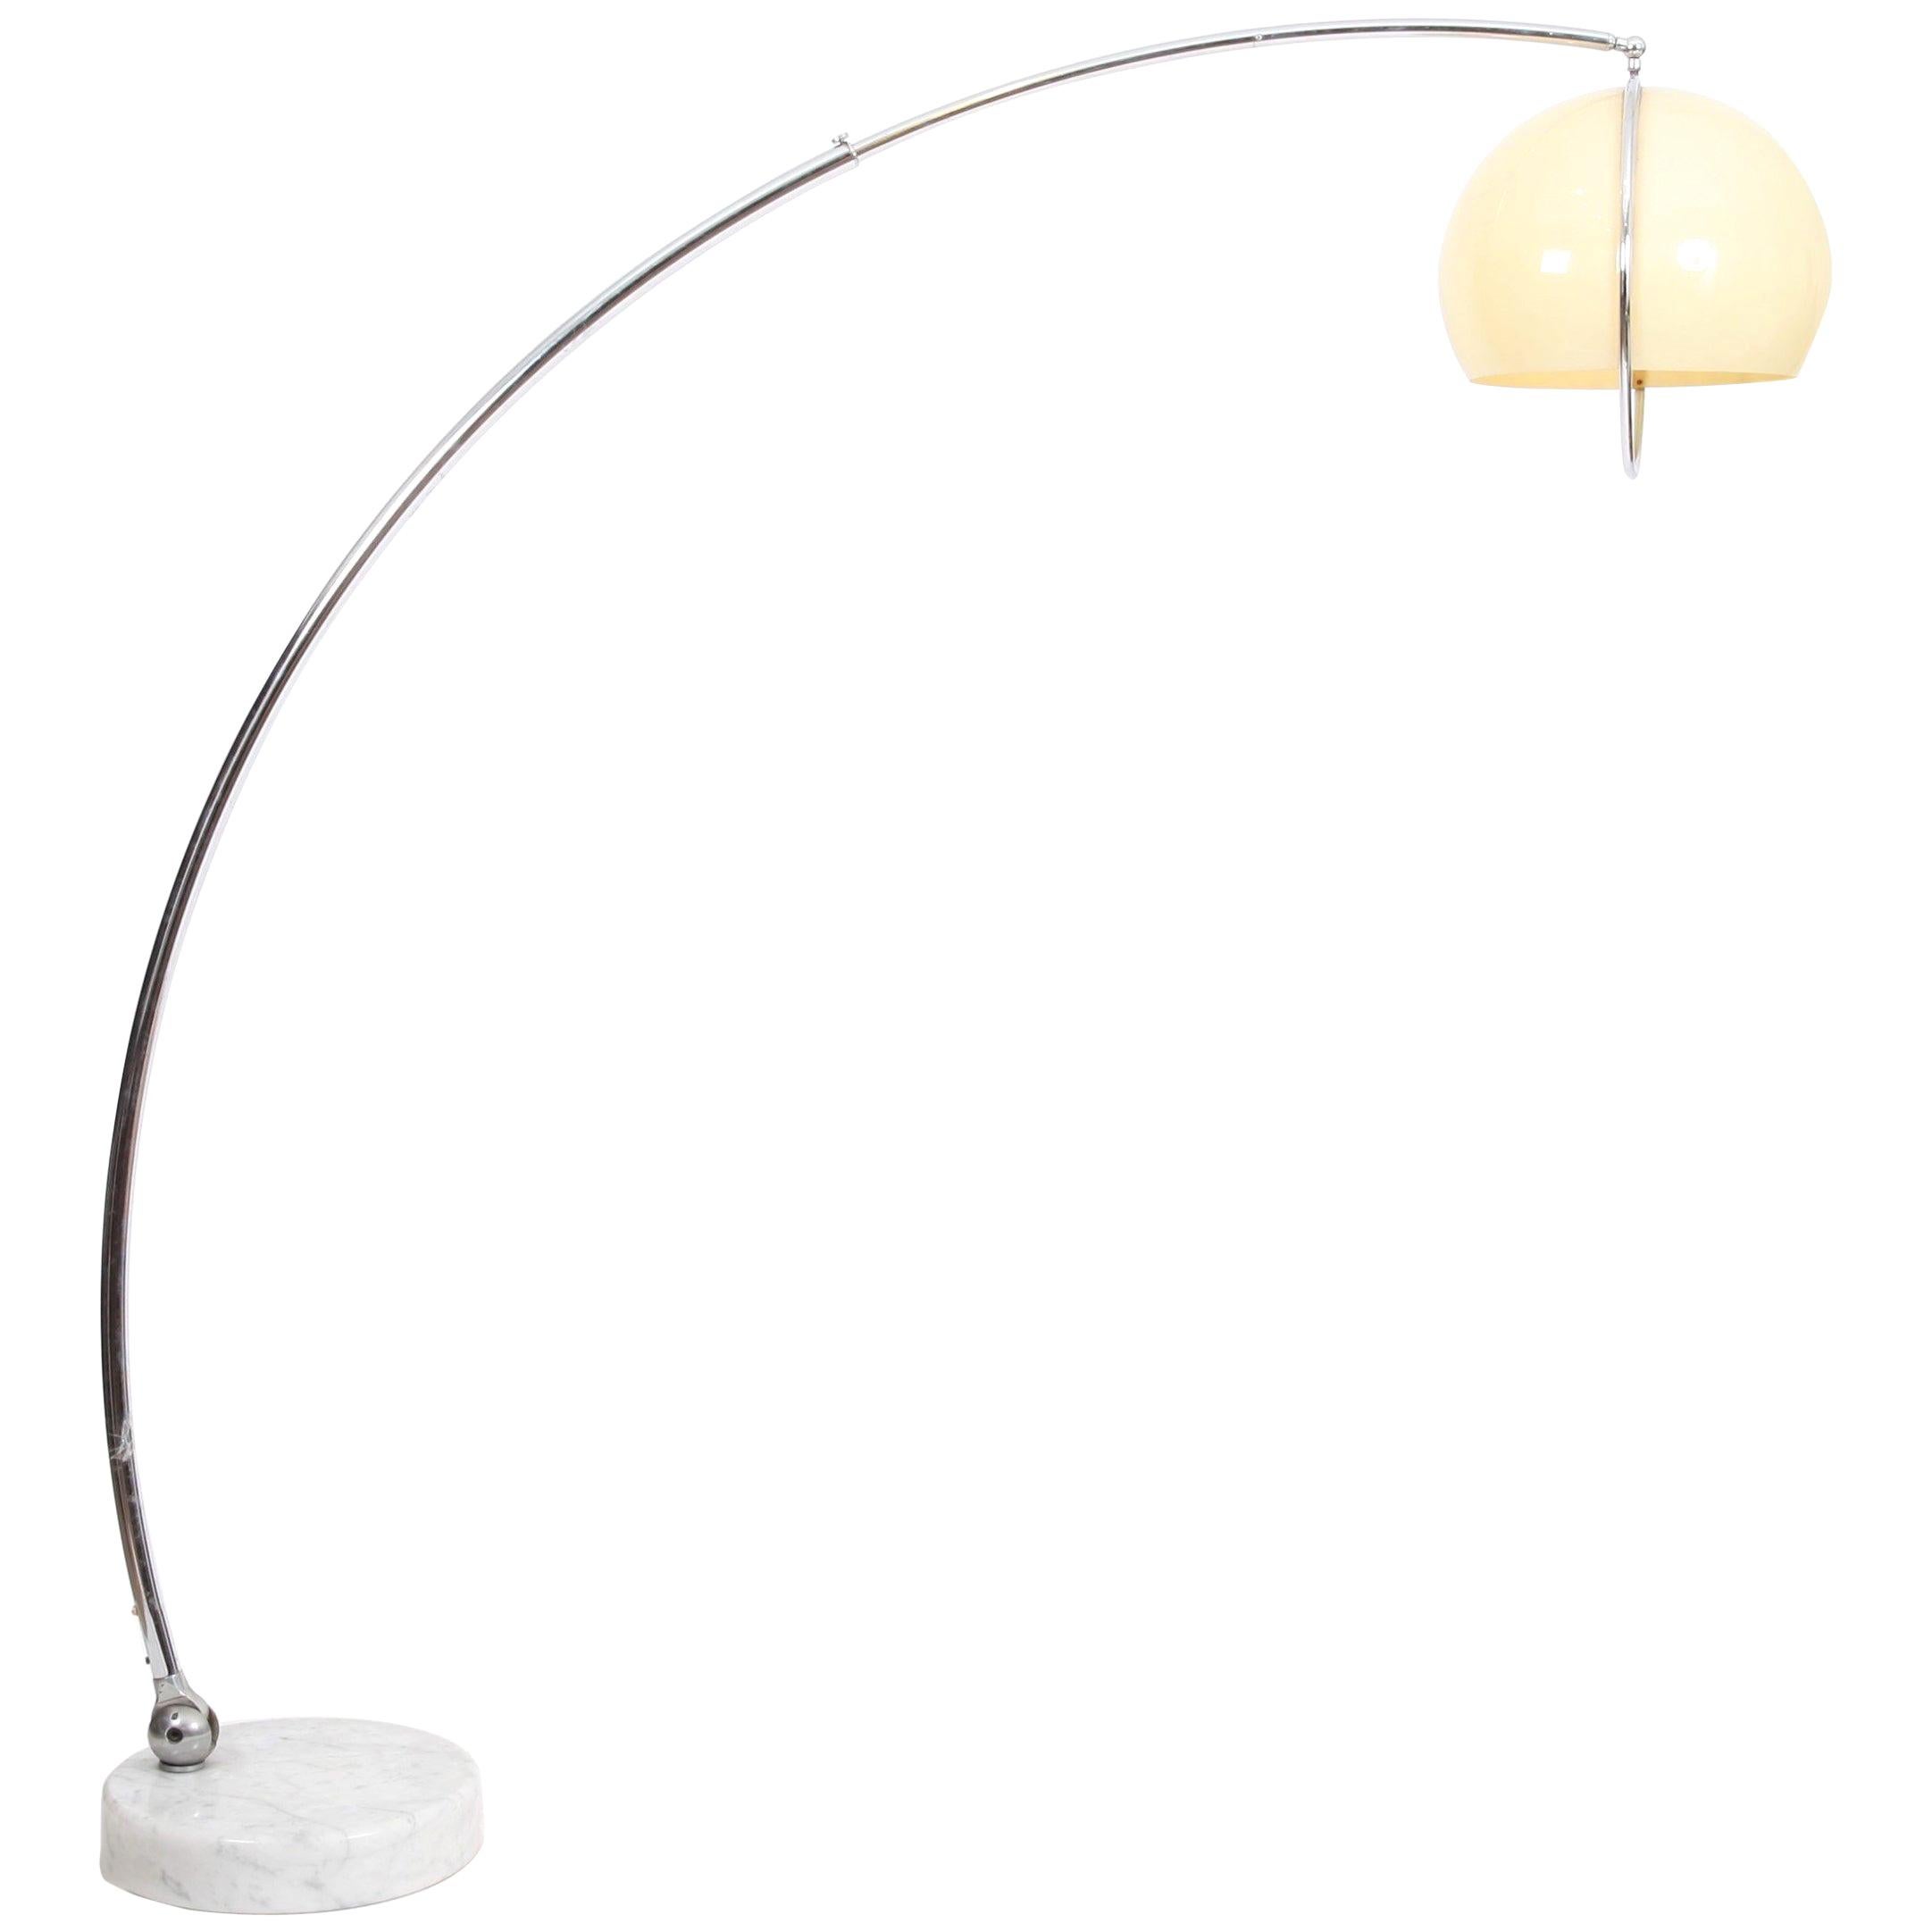 How tall should an arc floor lamp be?